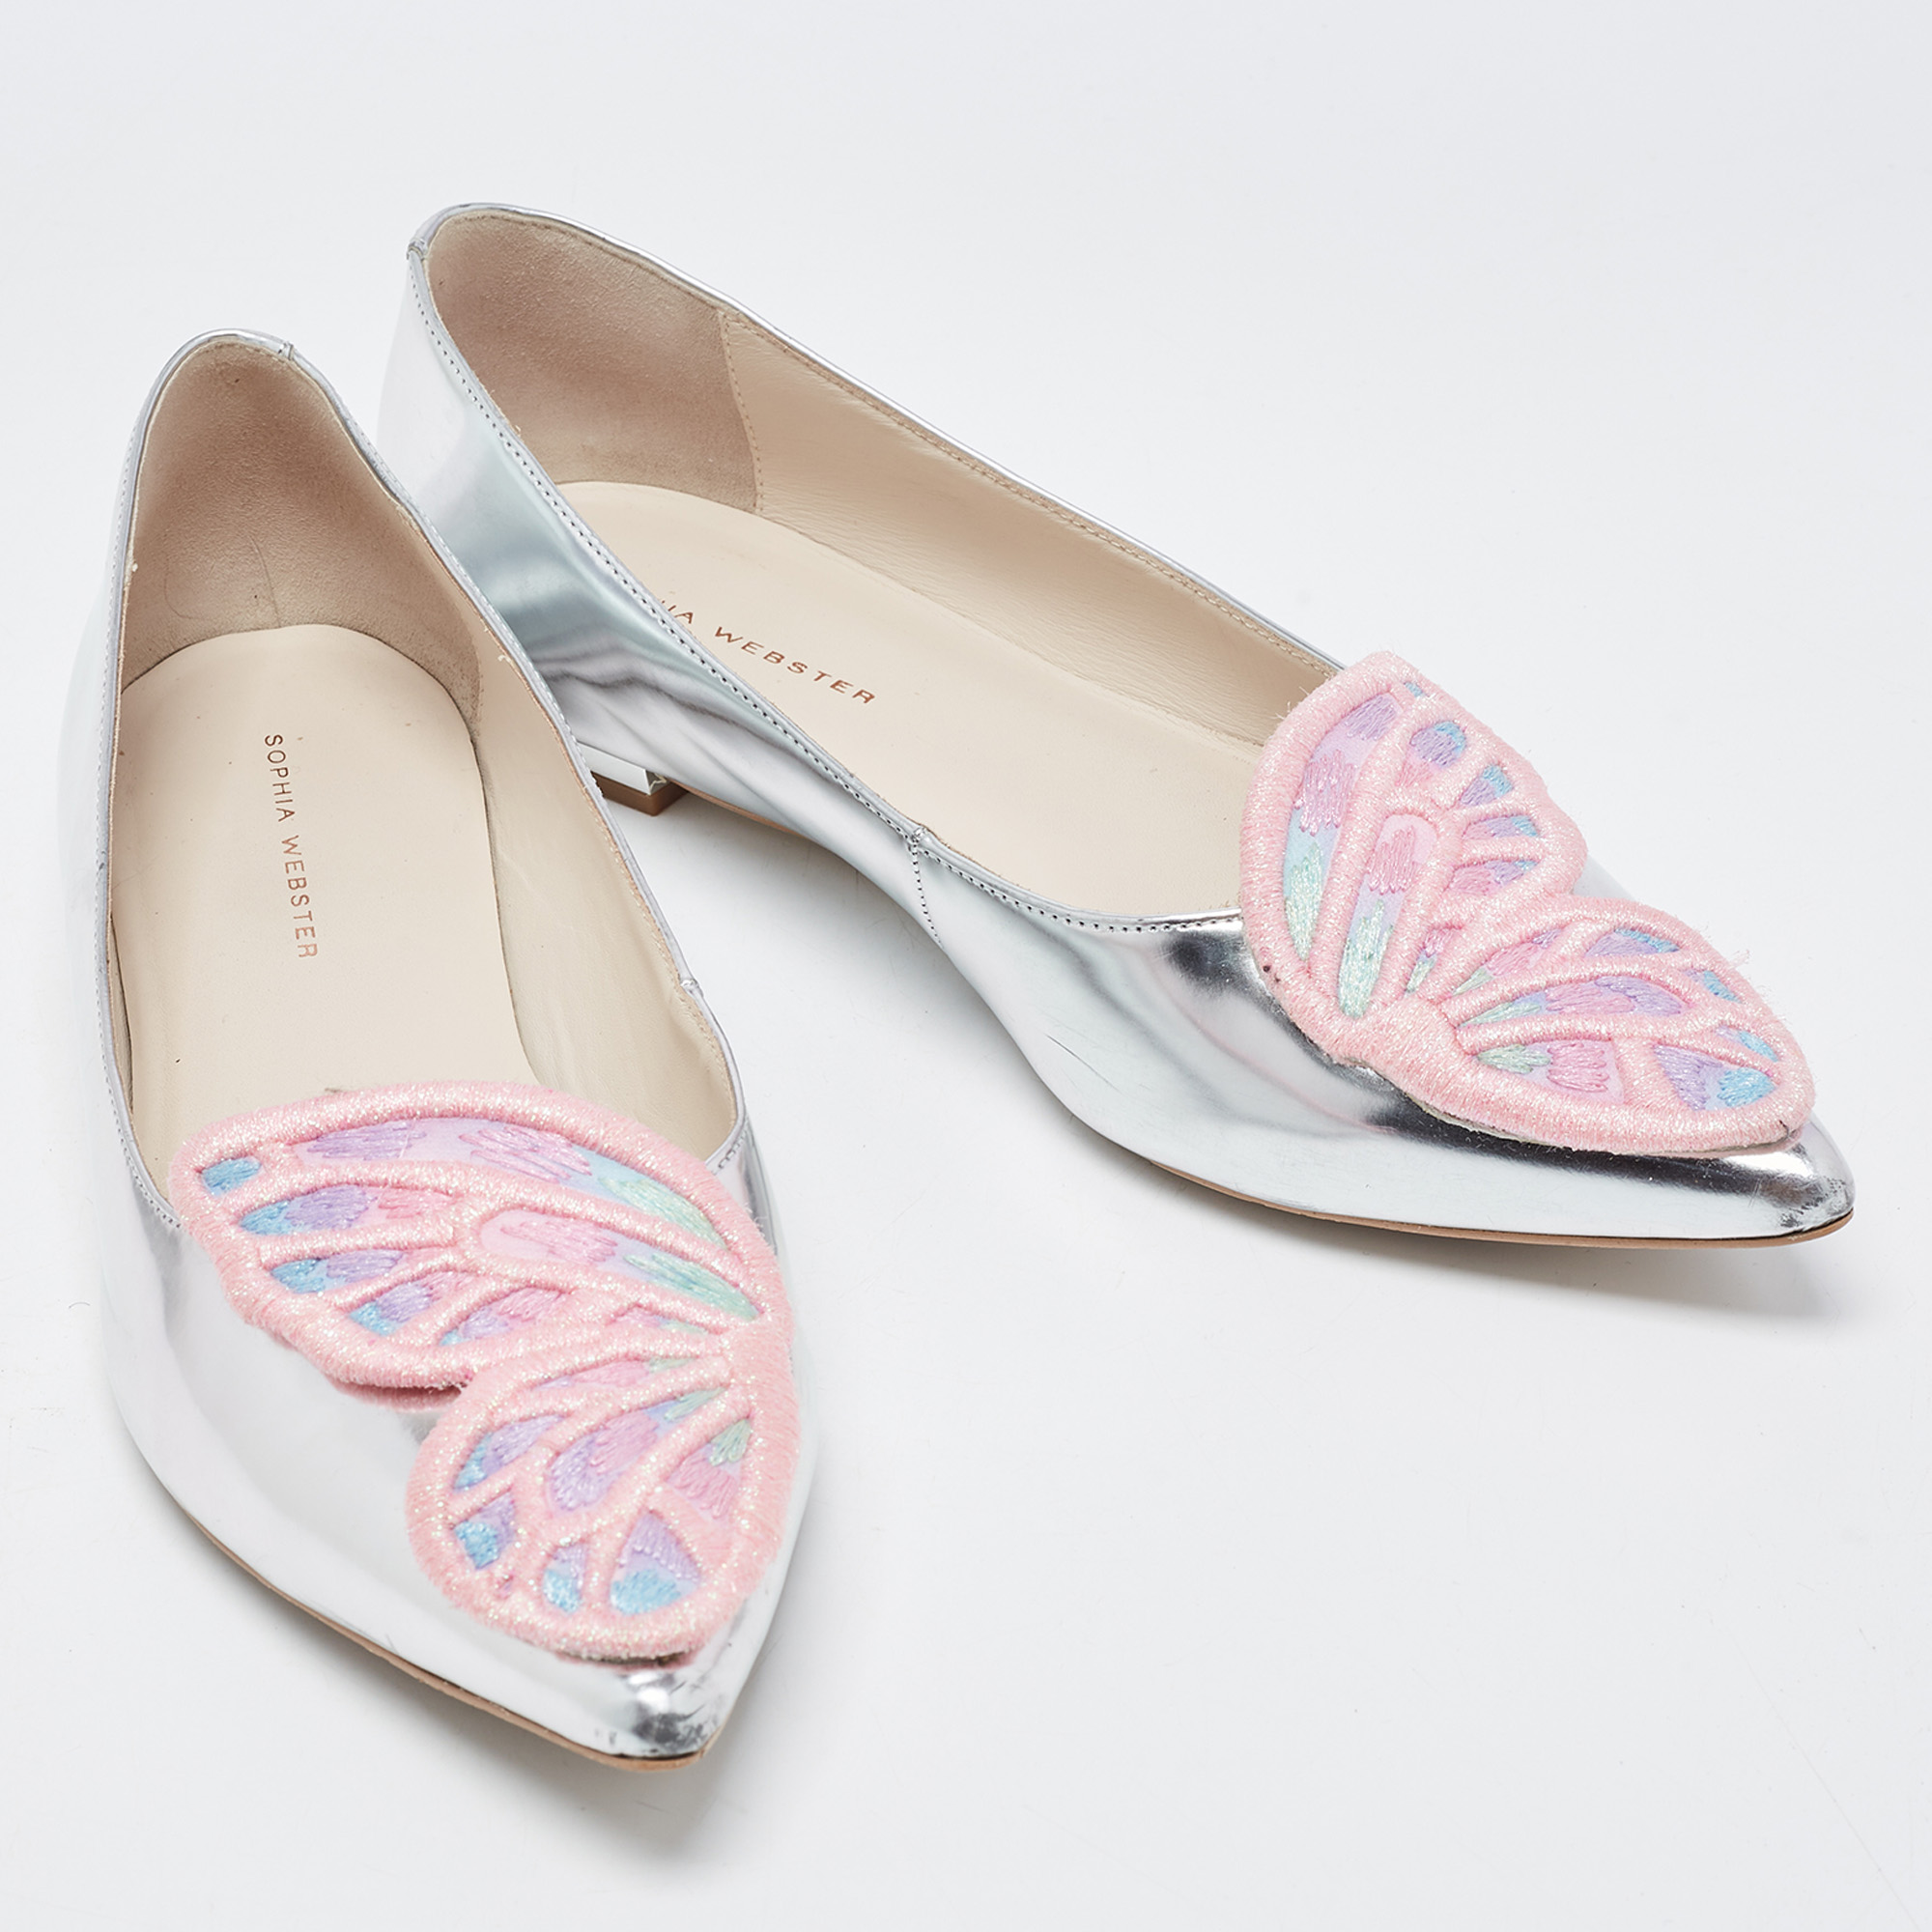 Sophia Webster Silver Leather Bibi Butterfly Ballet Flats Size 39.5